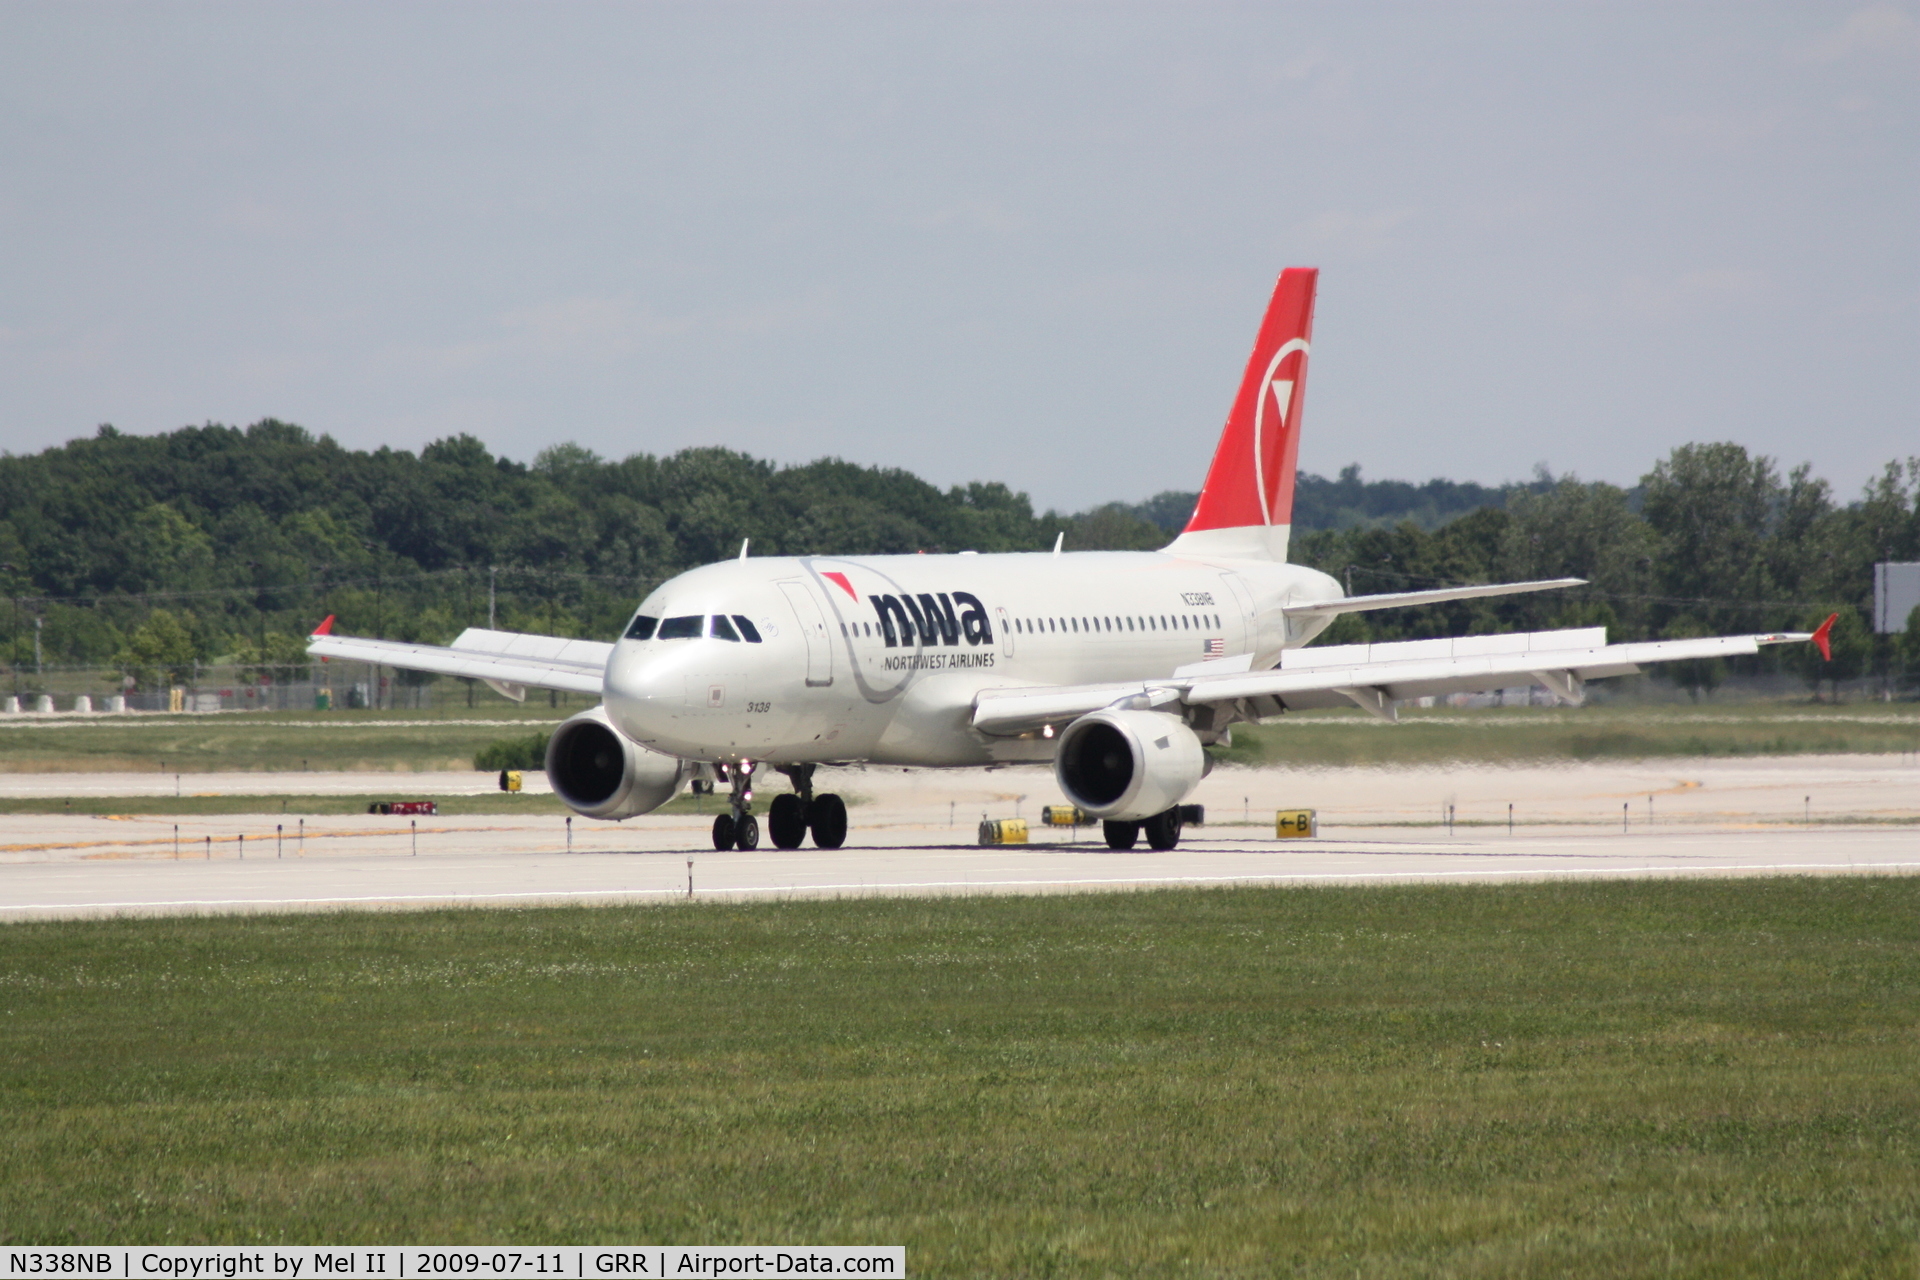 N338NB, 2002 Airbus A319-114 C/N 1693, NWA1240 - KDTW-KGRR - Landing RWY 26L